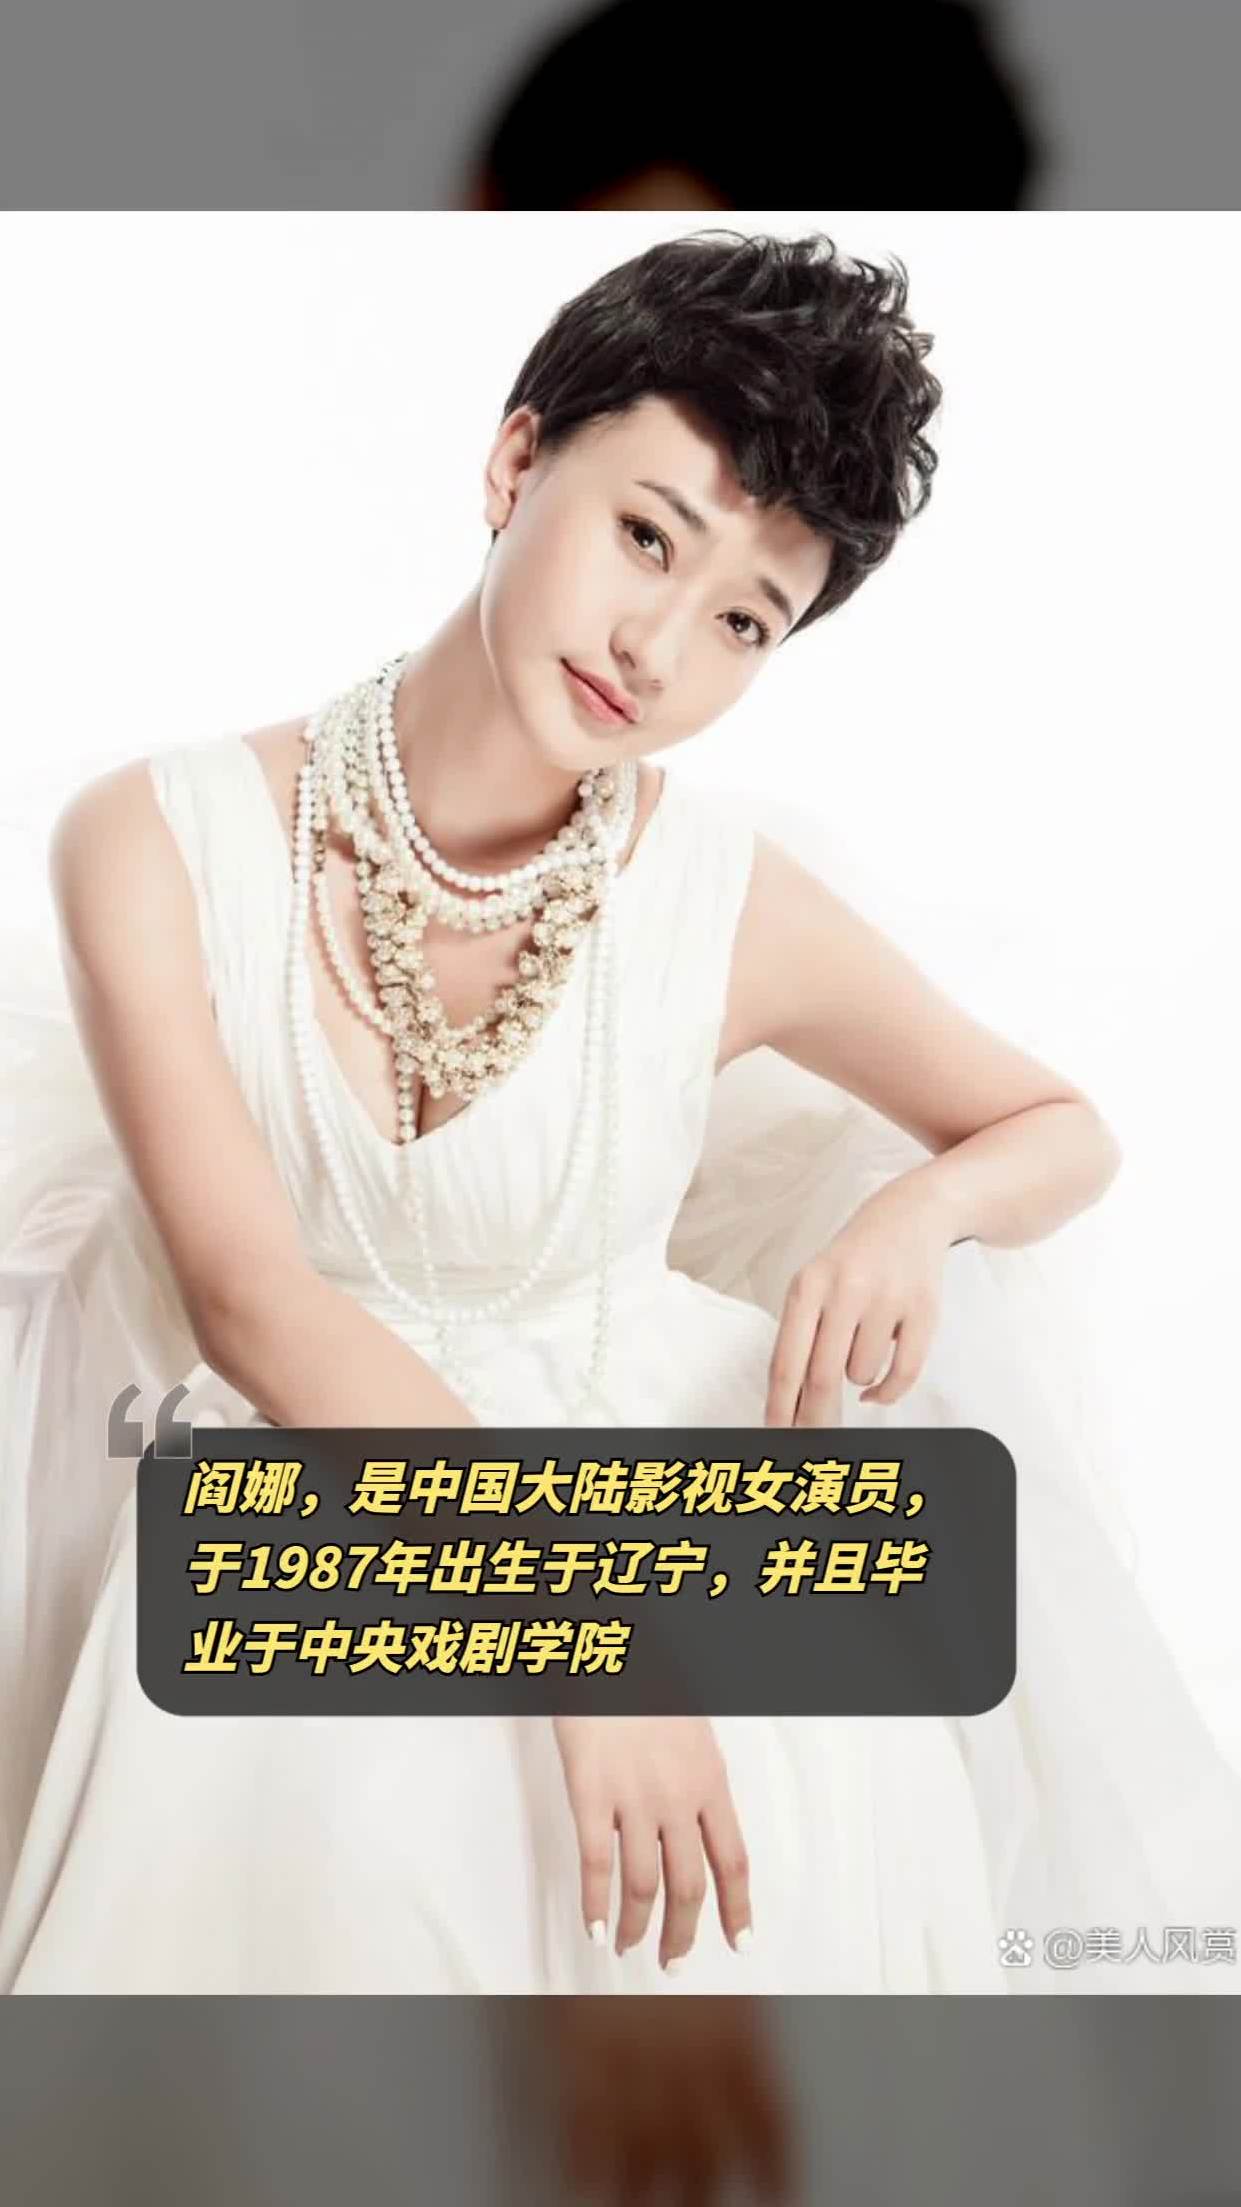 阎娜,是中国大陆影视女演员,于1987年出生于辽宁,并且毕业于中央戏剧